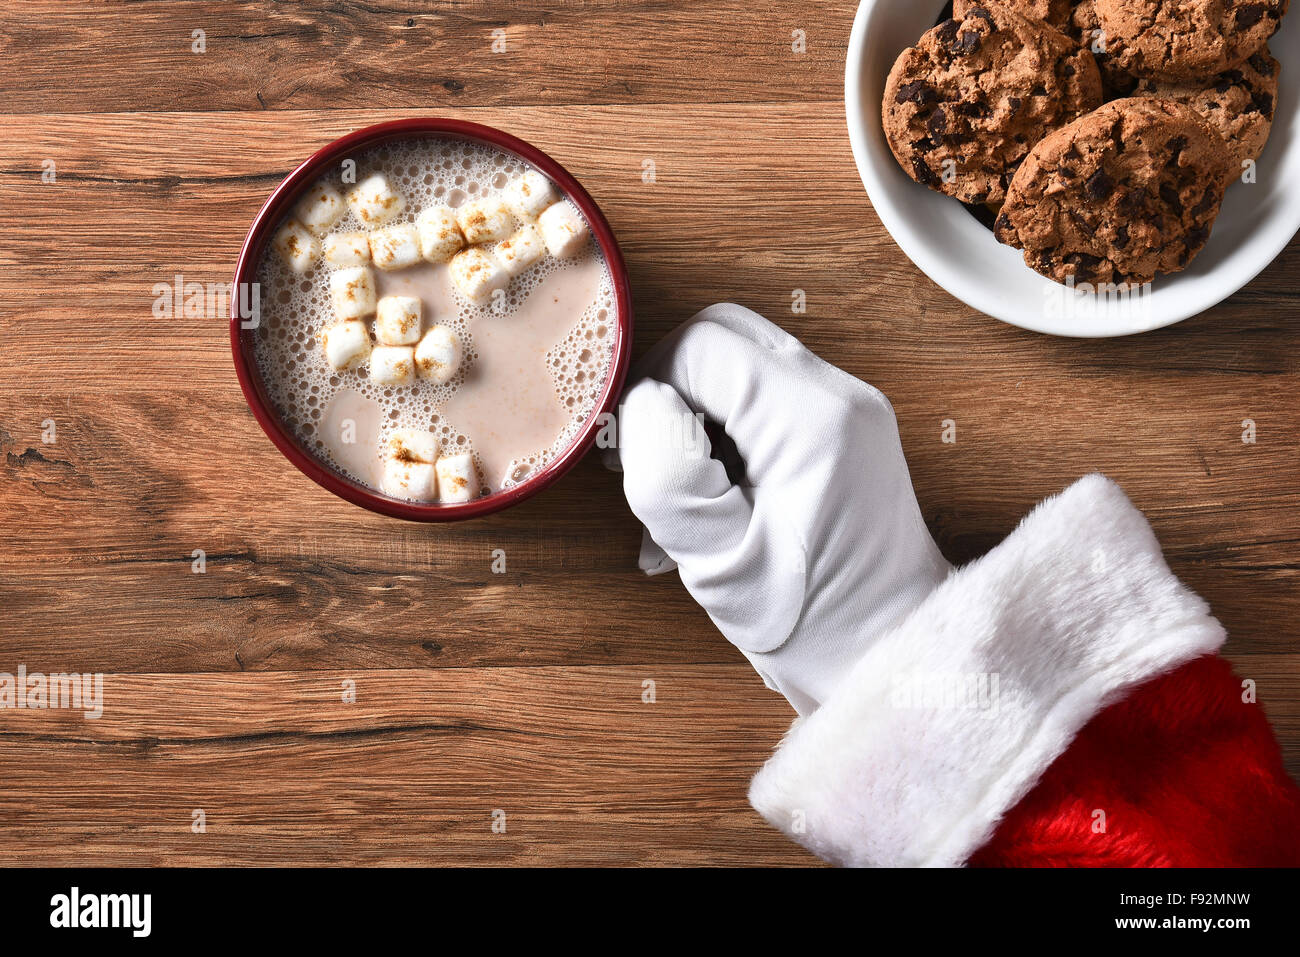 Angolo alto closeup di Santa Claus tenendo una tazza di cioccolata calda su una tavola di legno con la piastra del cookie. Foto Stock